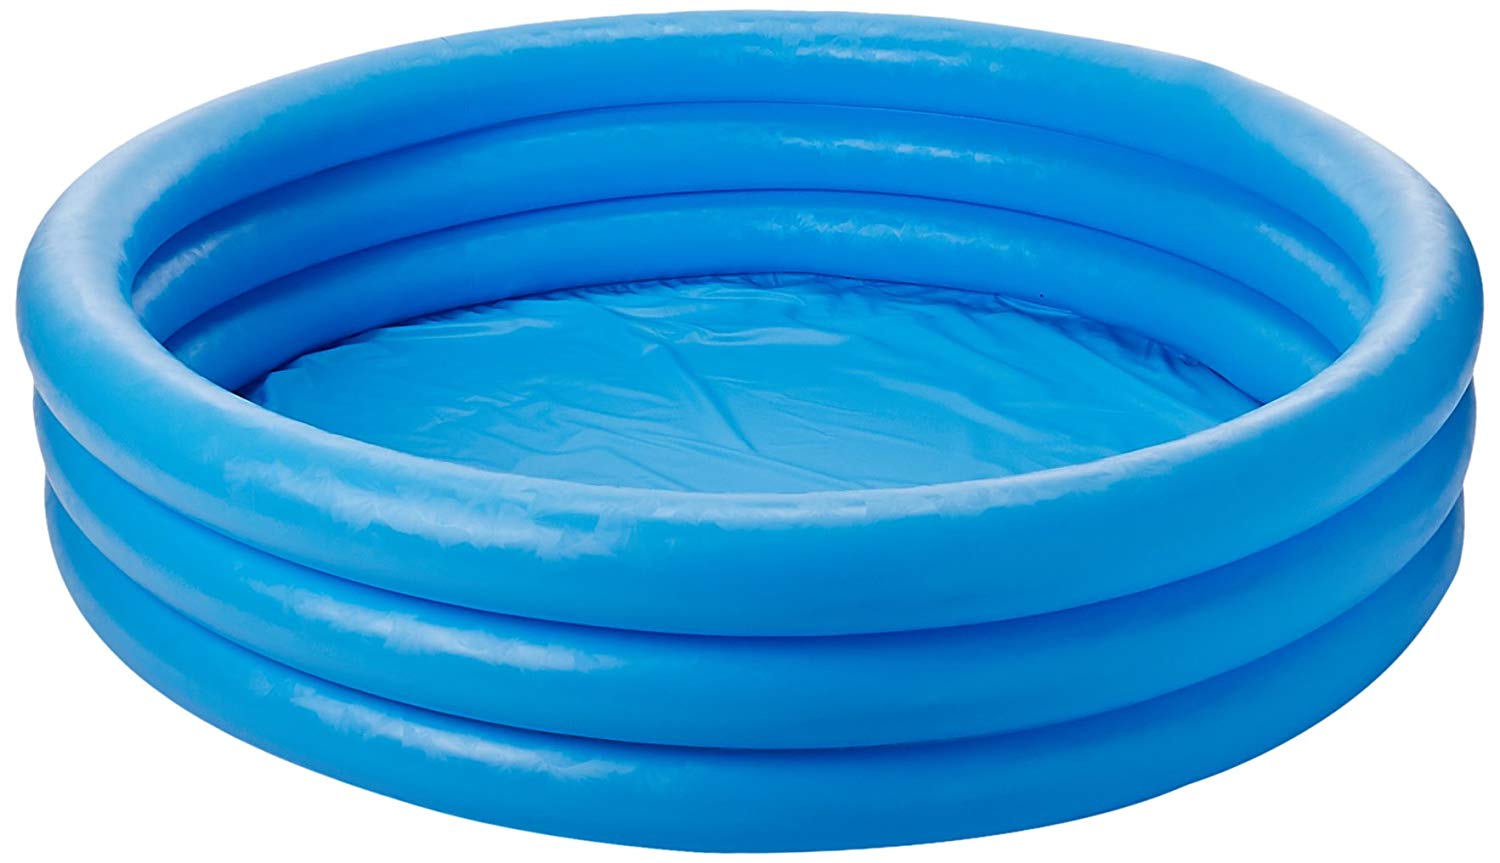 Intex Crystal Blue Inflatable Best Kiddie Pools